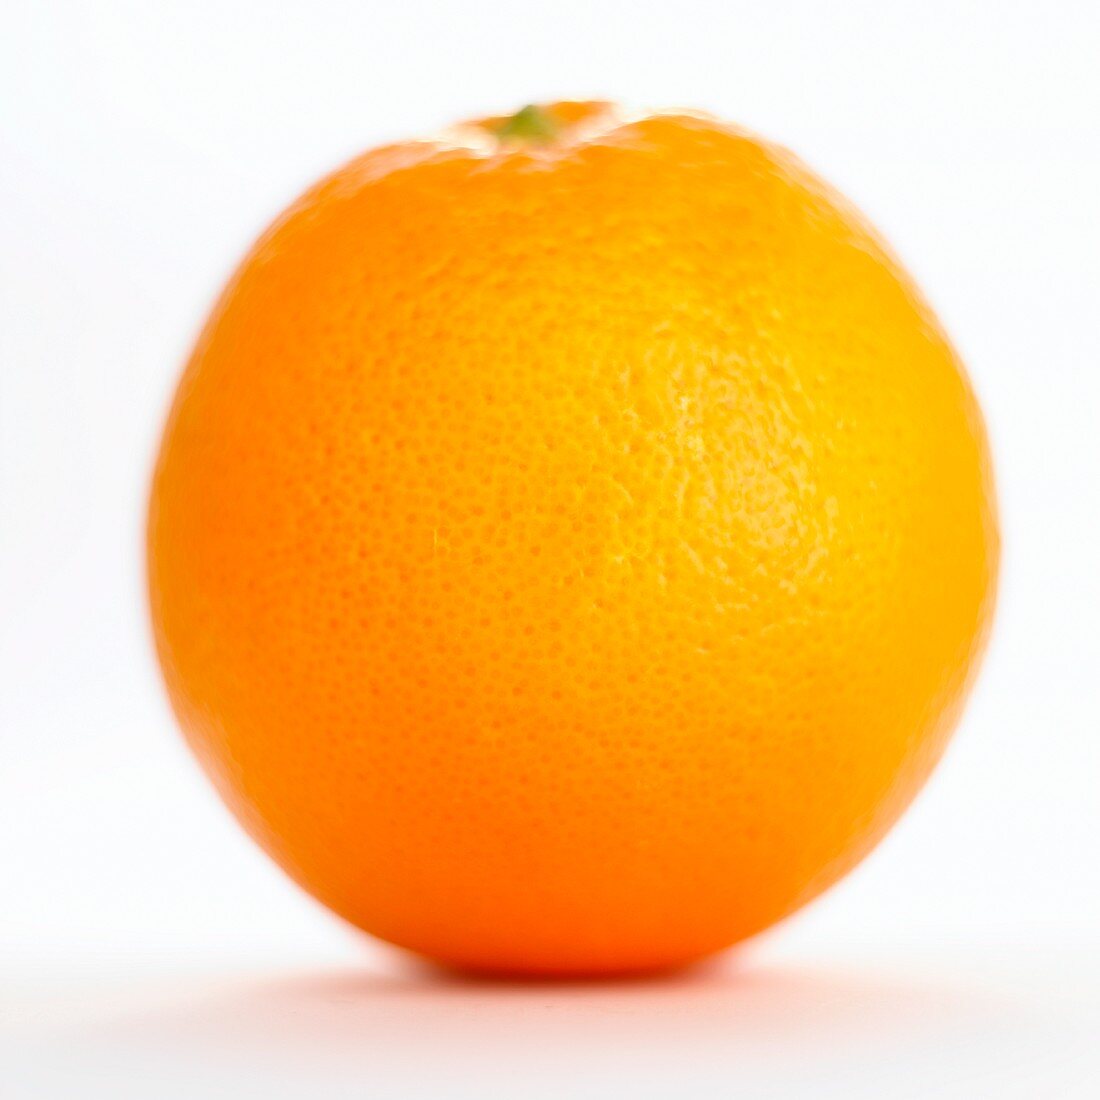 An orange